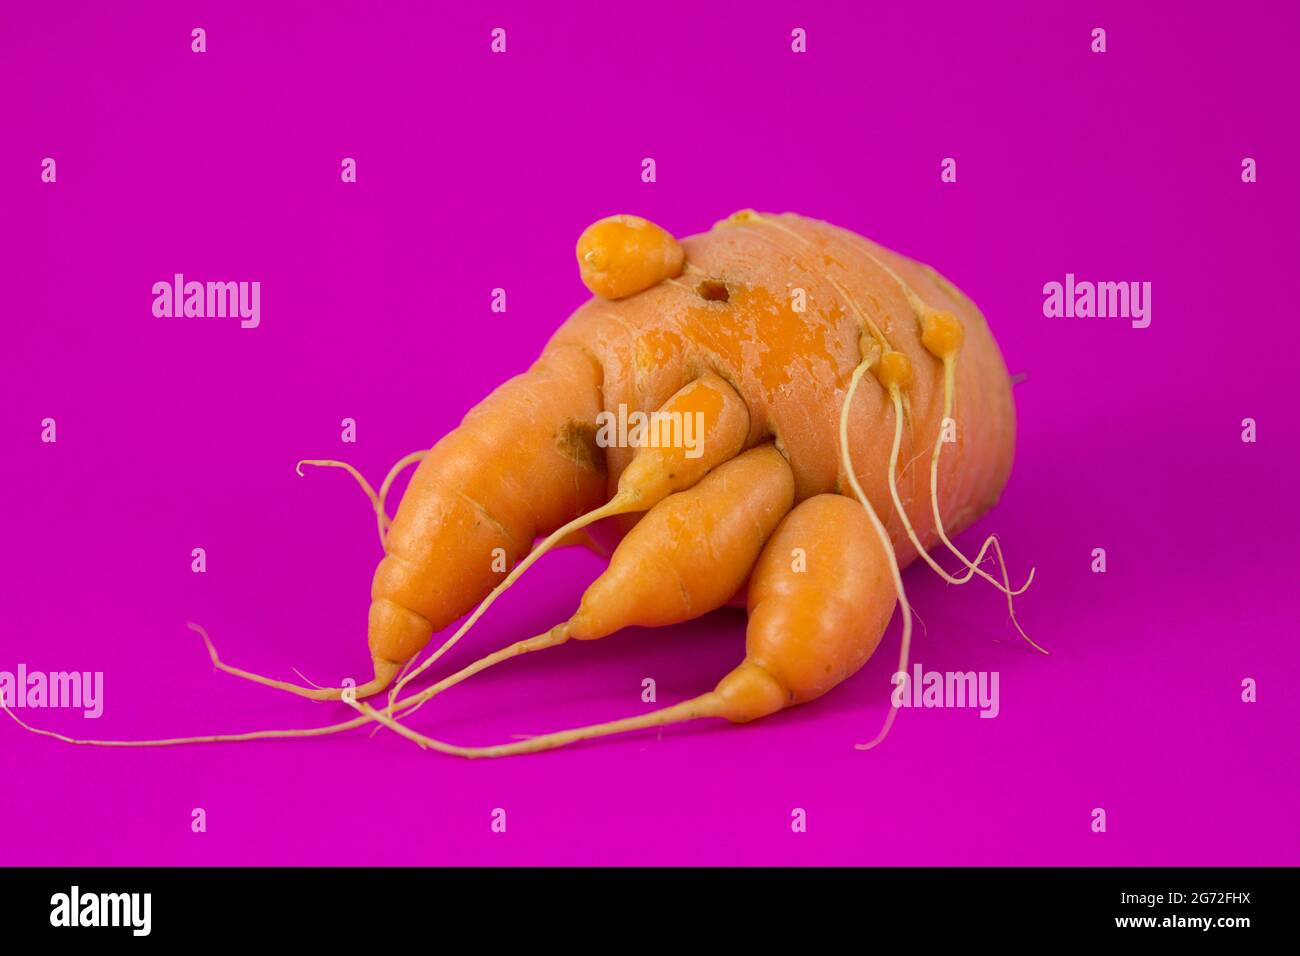 Isolata carota divertente con radici su uno sfondo rosa vibrante Foto Stock